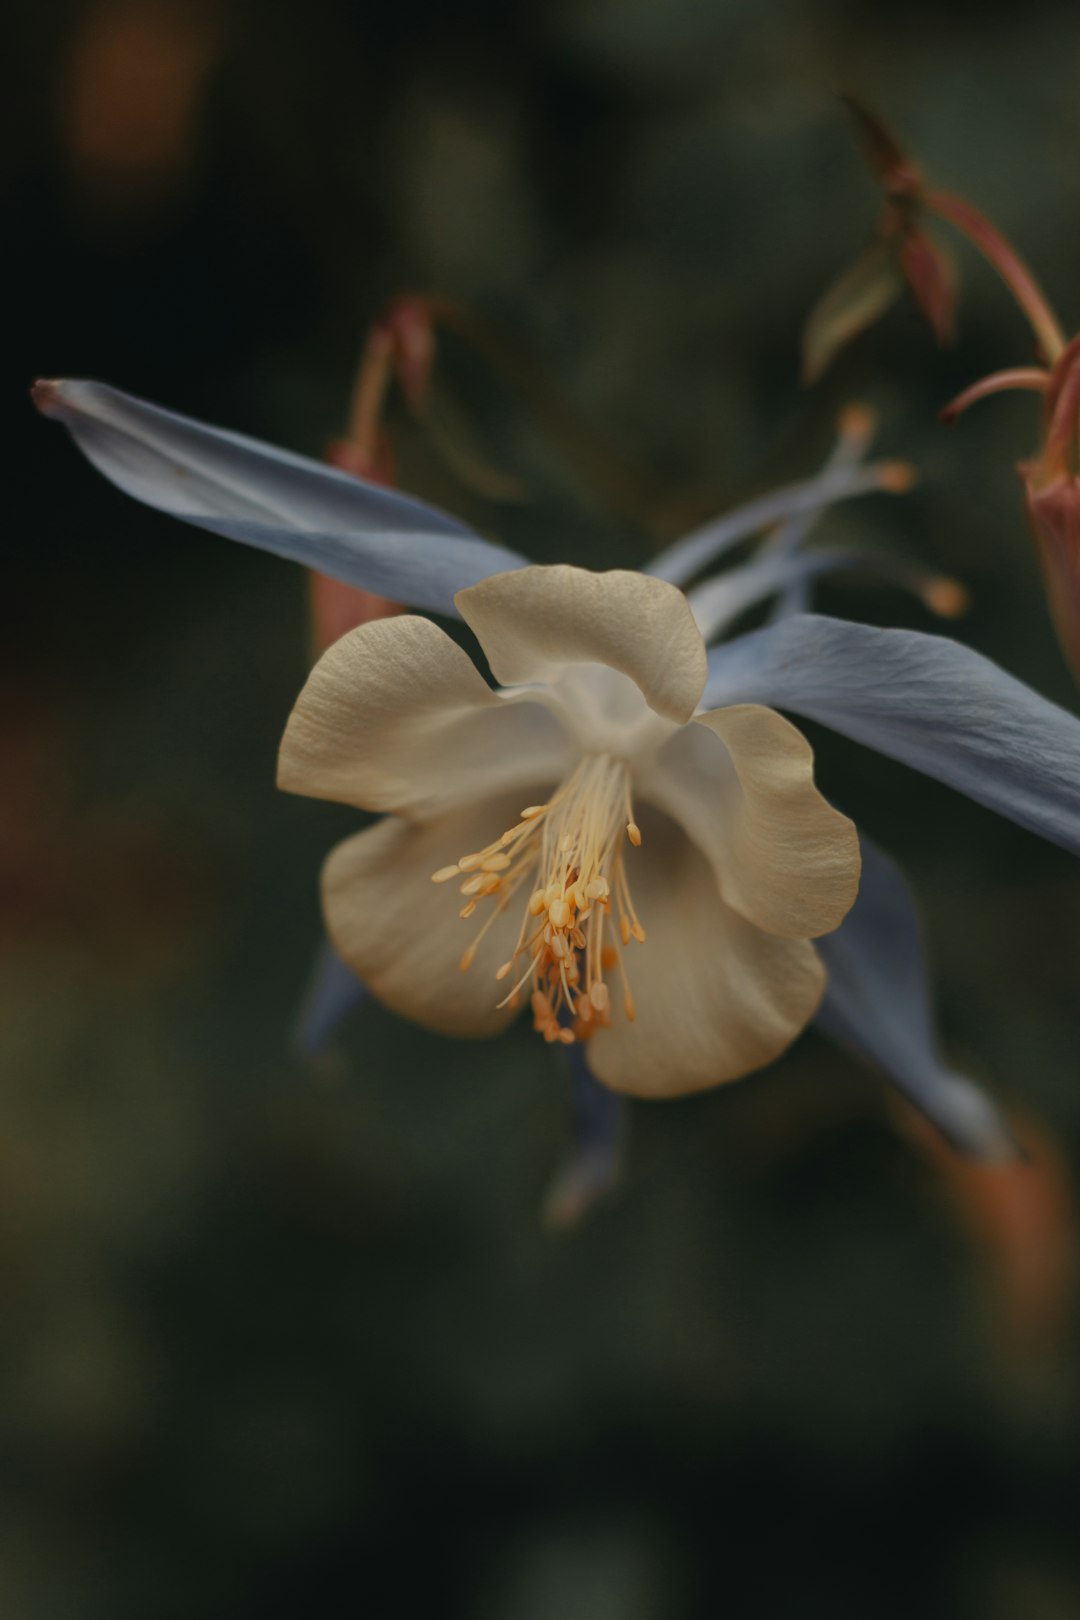 white and blue flower in tilt shift lens